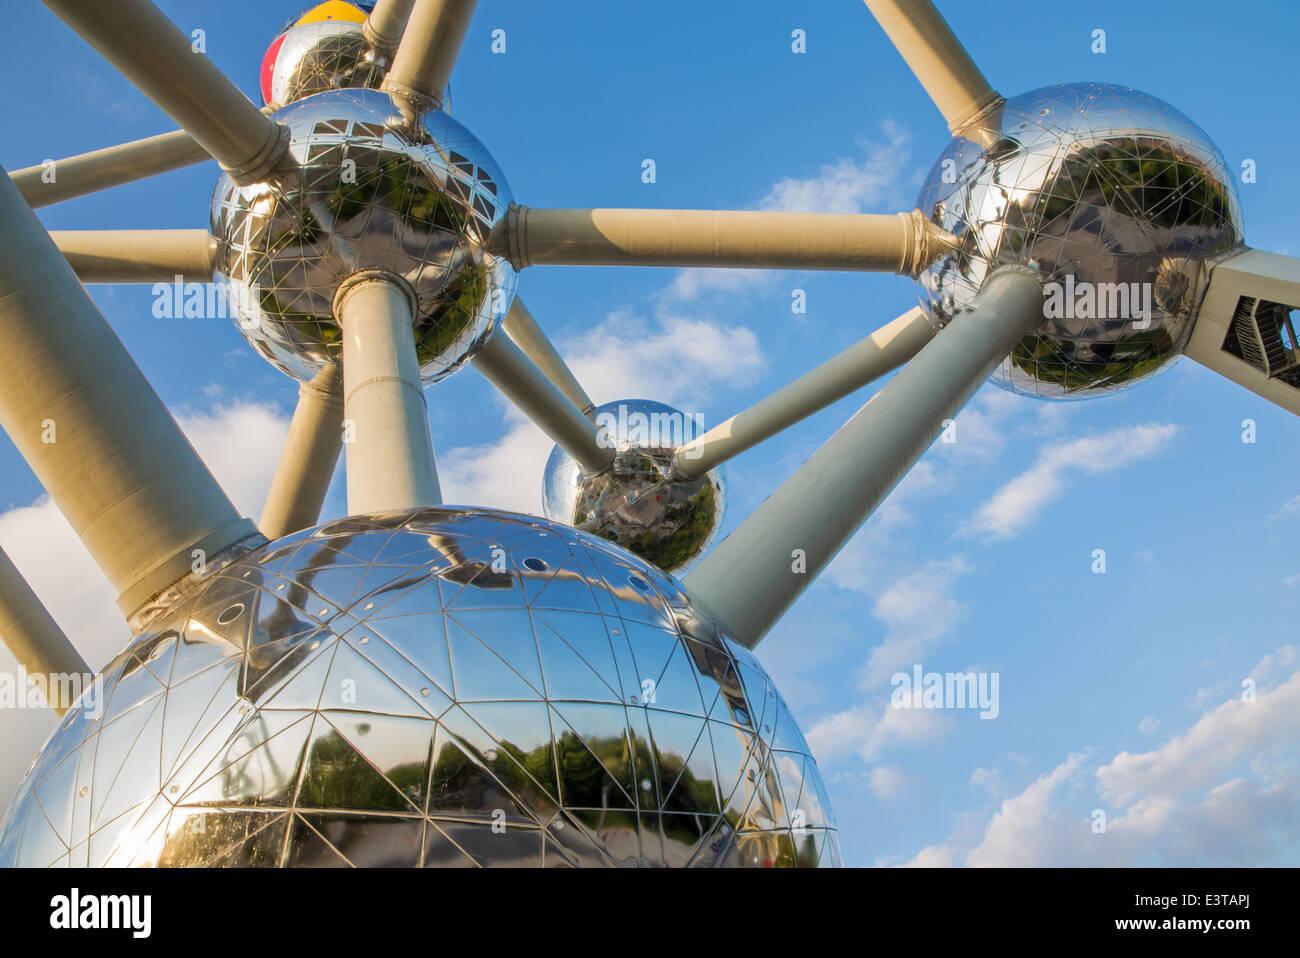 Bruxelles, Belgique - 16 juin 2014 : Détail de l'Atomium. Bâtiment moderne a été construit pour l'Expo '58 Banque D'Images